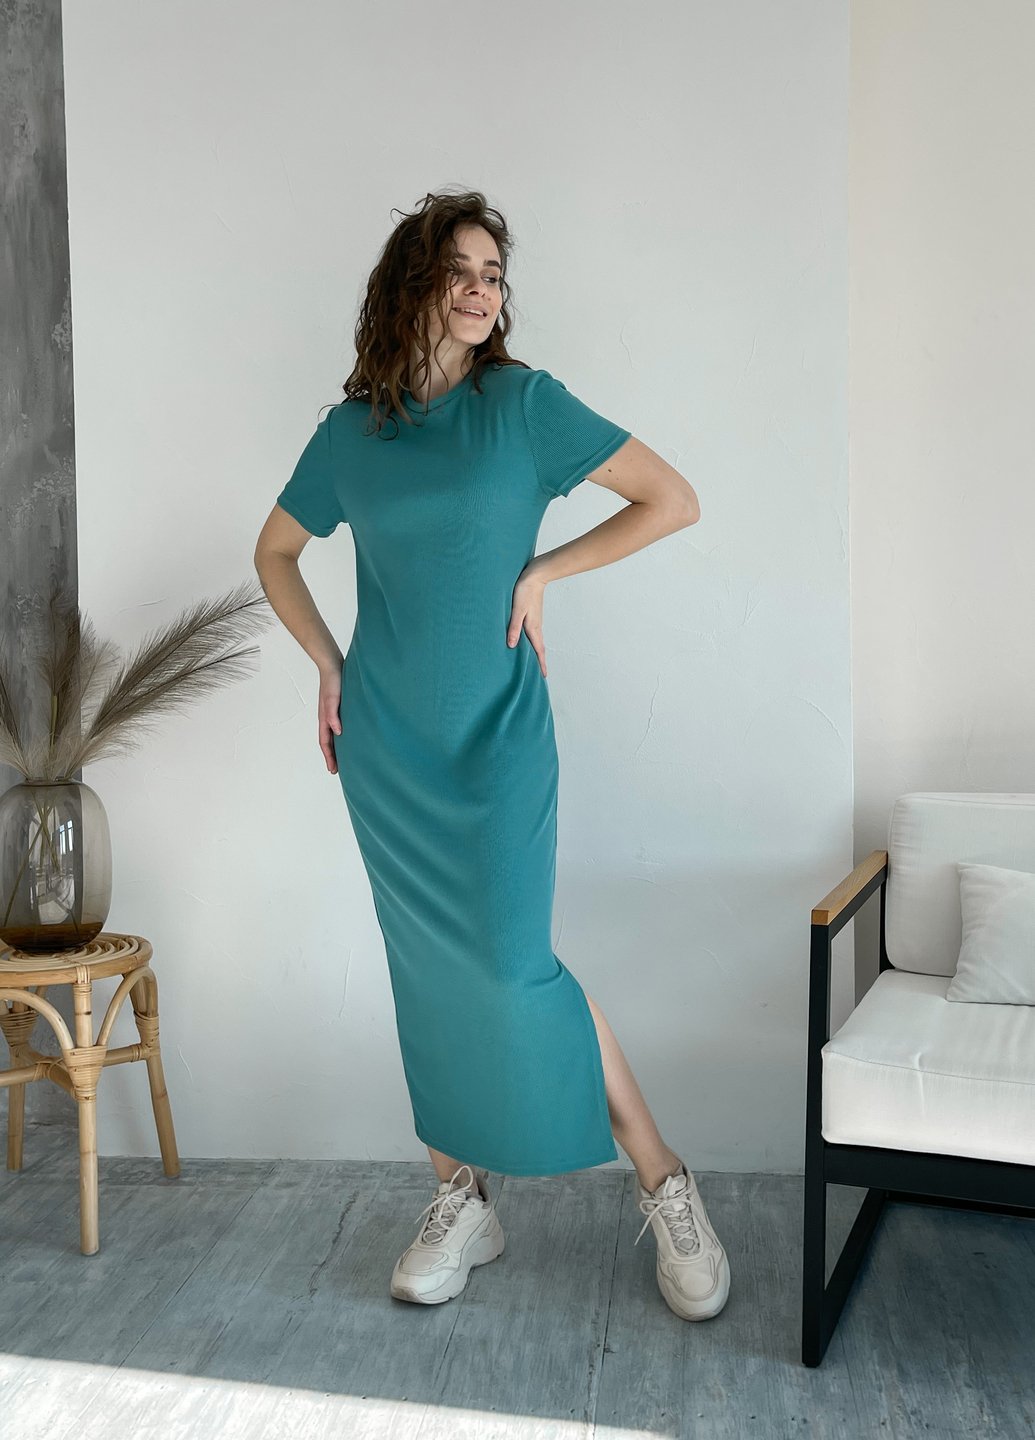 Купить Длинное платье женское в рубчик бирюзовое Merlini Кассо 700000125, размер XS-M (40-44) в интернет-магазине